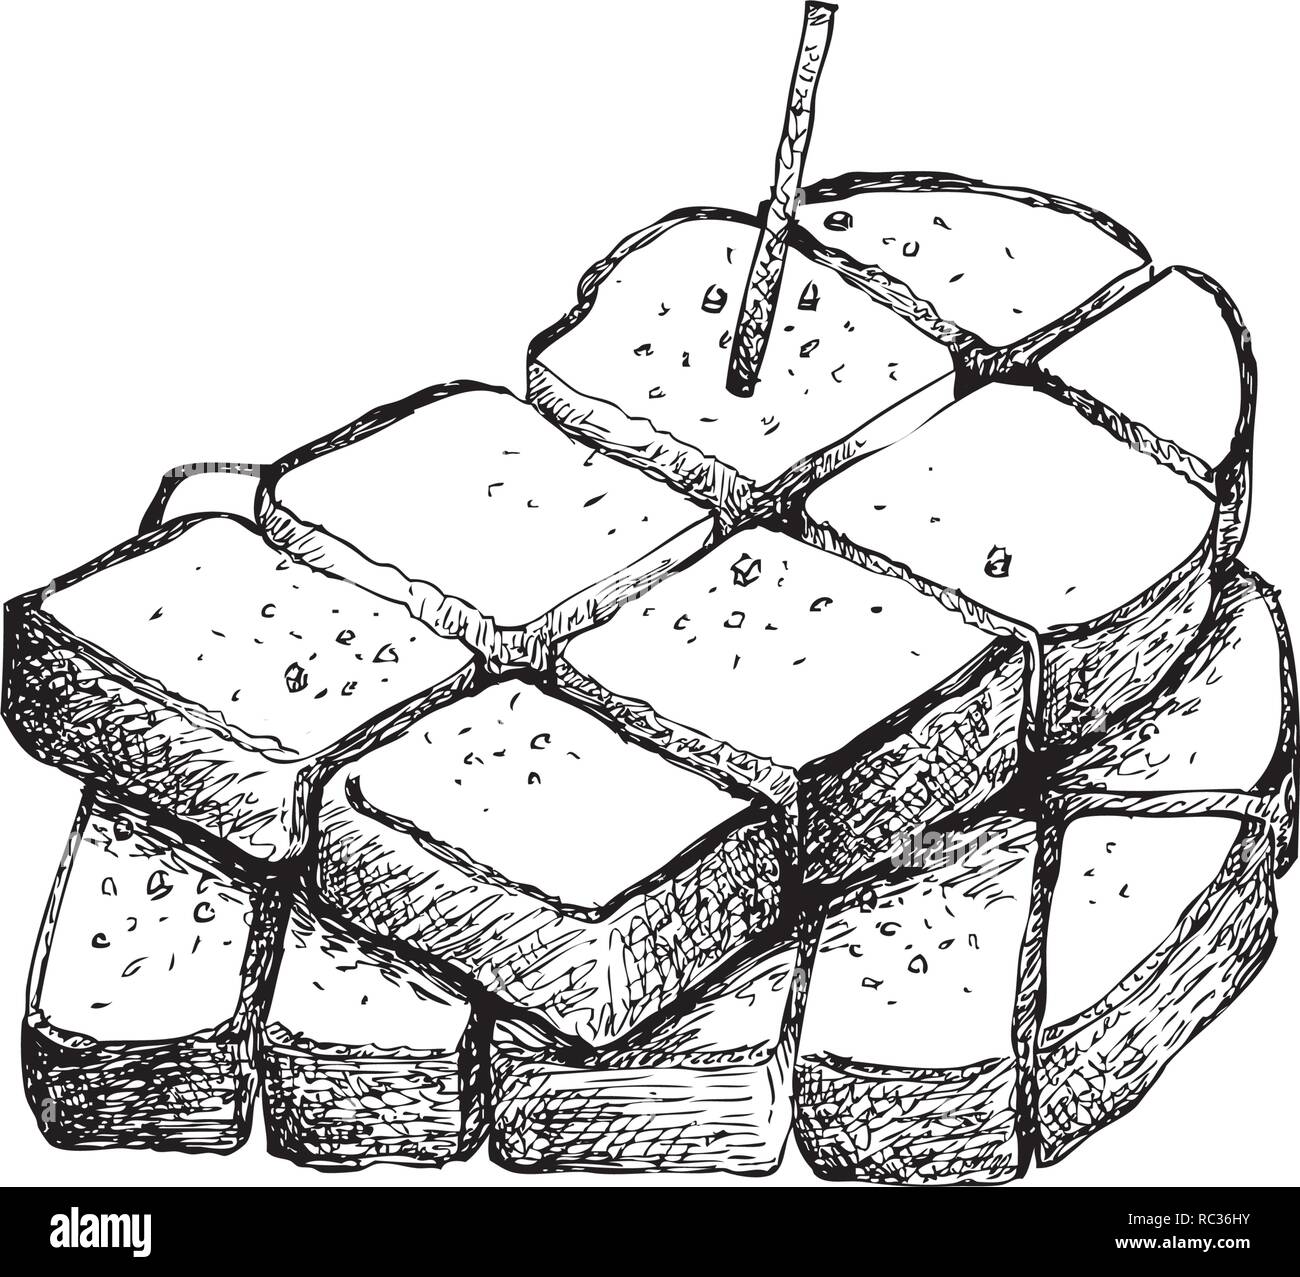 Snack e Dessert, Illustrazione disegnata a mano lo schizzo di deliziosi piatti fatti in casa pane appena sfornato o toast isolati su sfondo bianco. Illustrazione Vettoriale